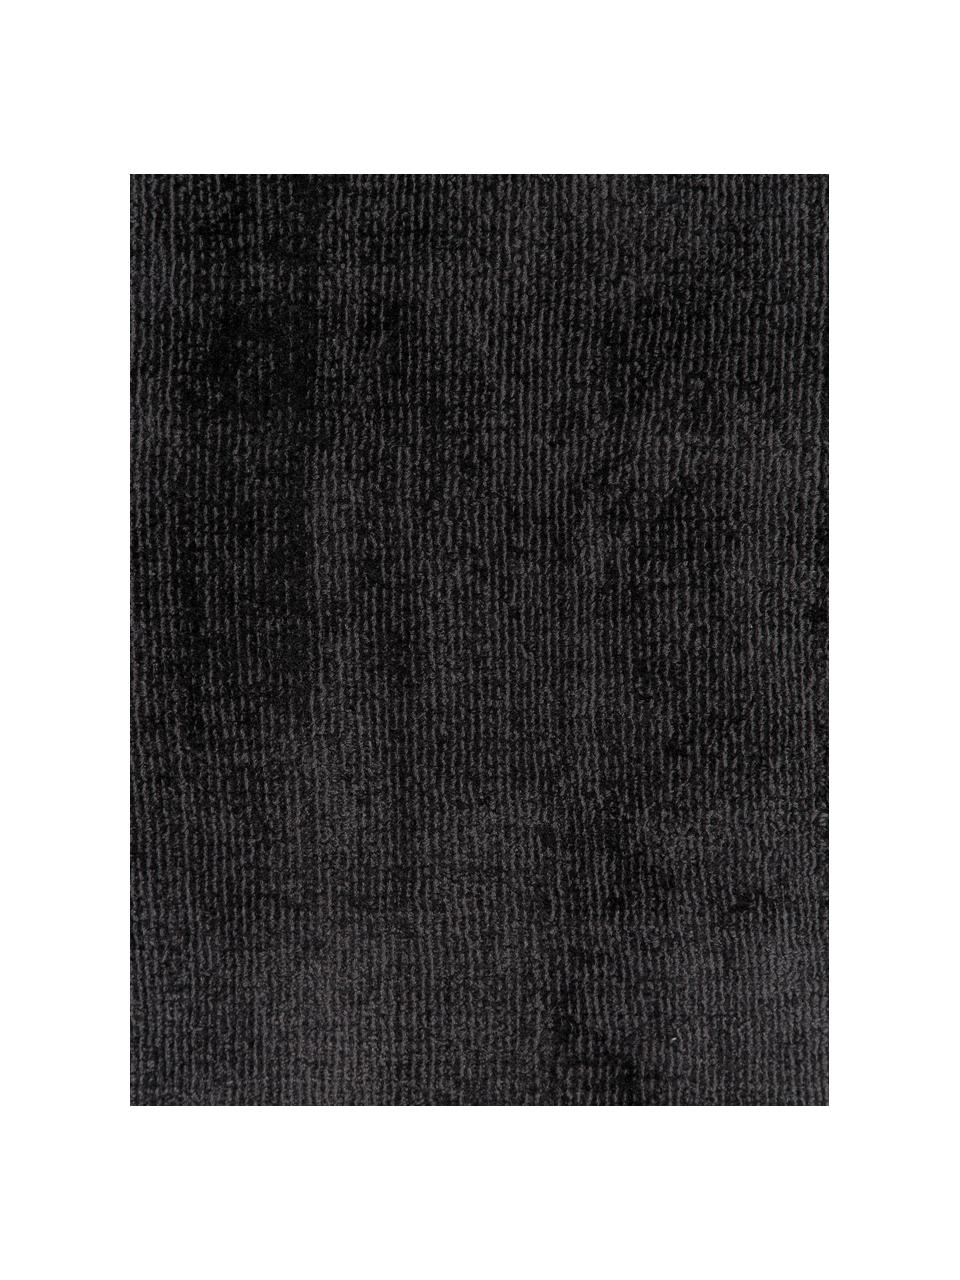 Handgeweven viscose loper Jane in antraciet-zwart, Bovenzijde: 100% viscose, Onderzijde: 100% katoen, Antraciet-zwart, B 80 x L 200 cm